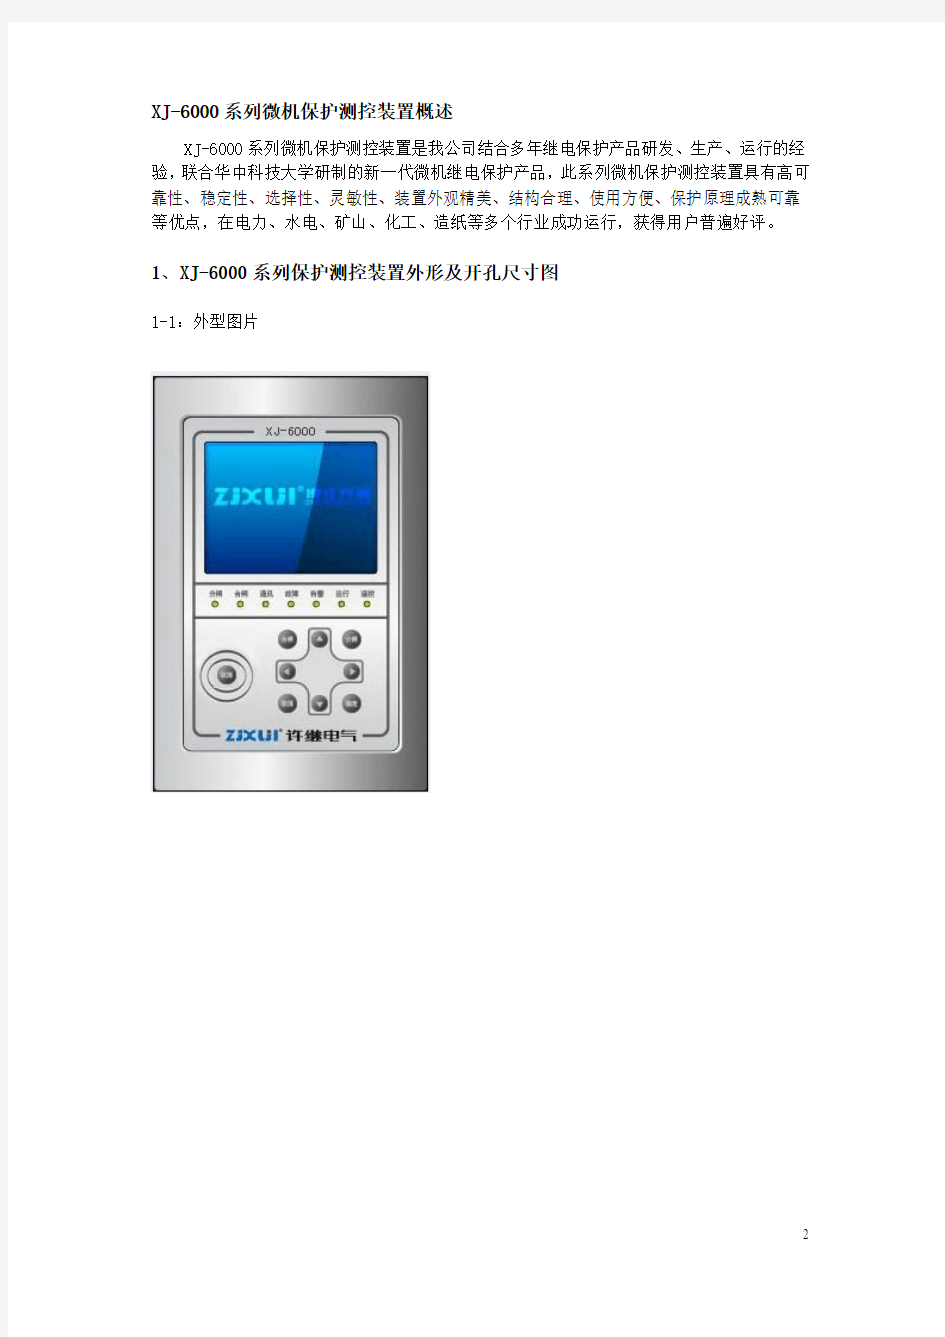 XJ-6000微机综合保护装置说明书V1.0